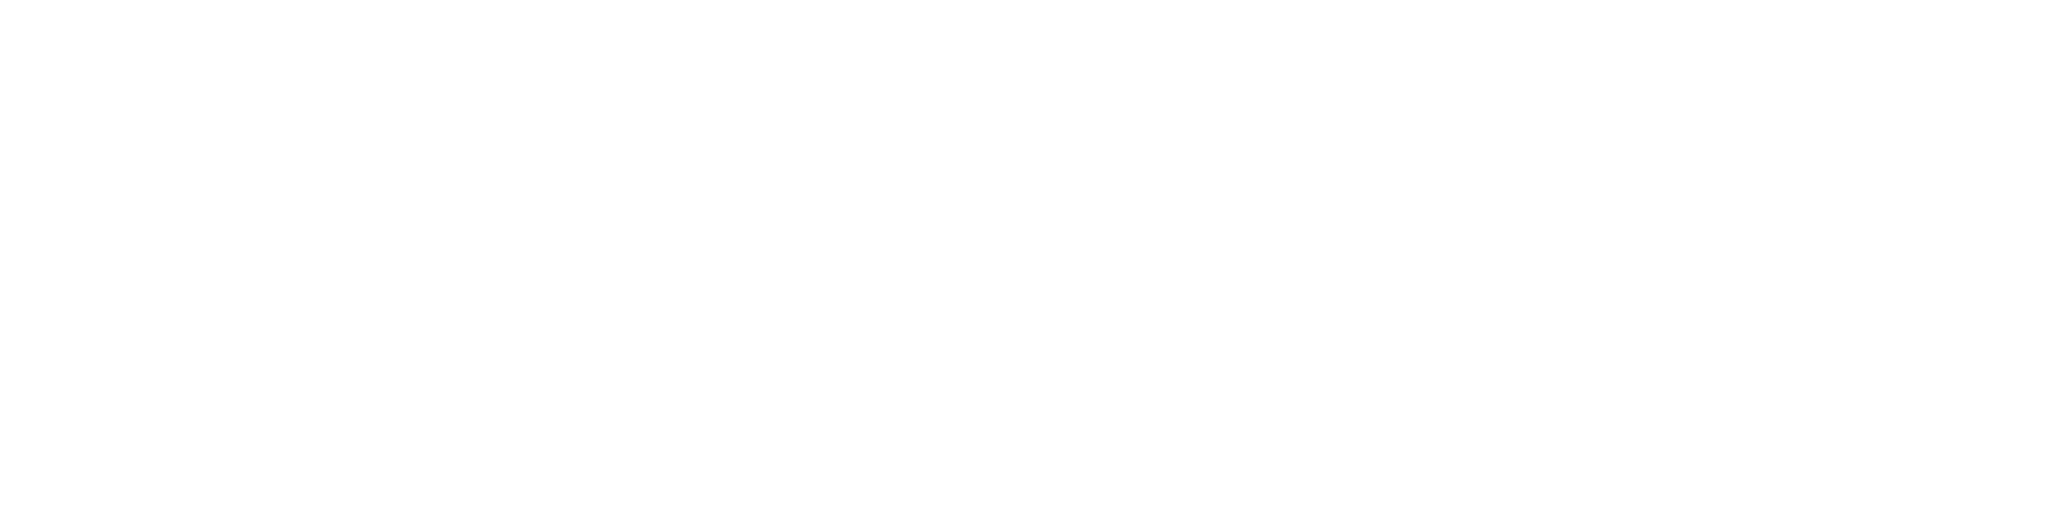 Metaverse Monday